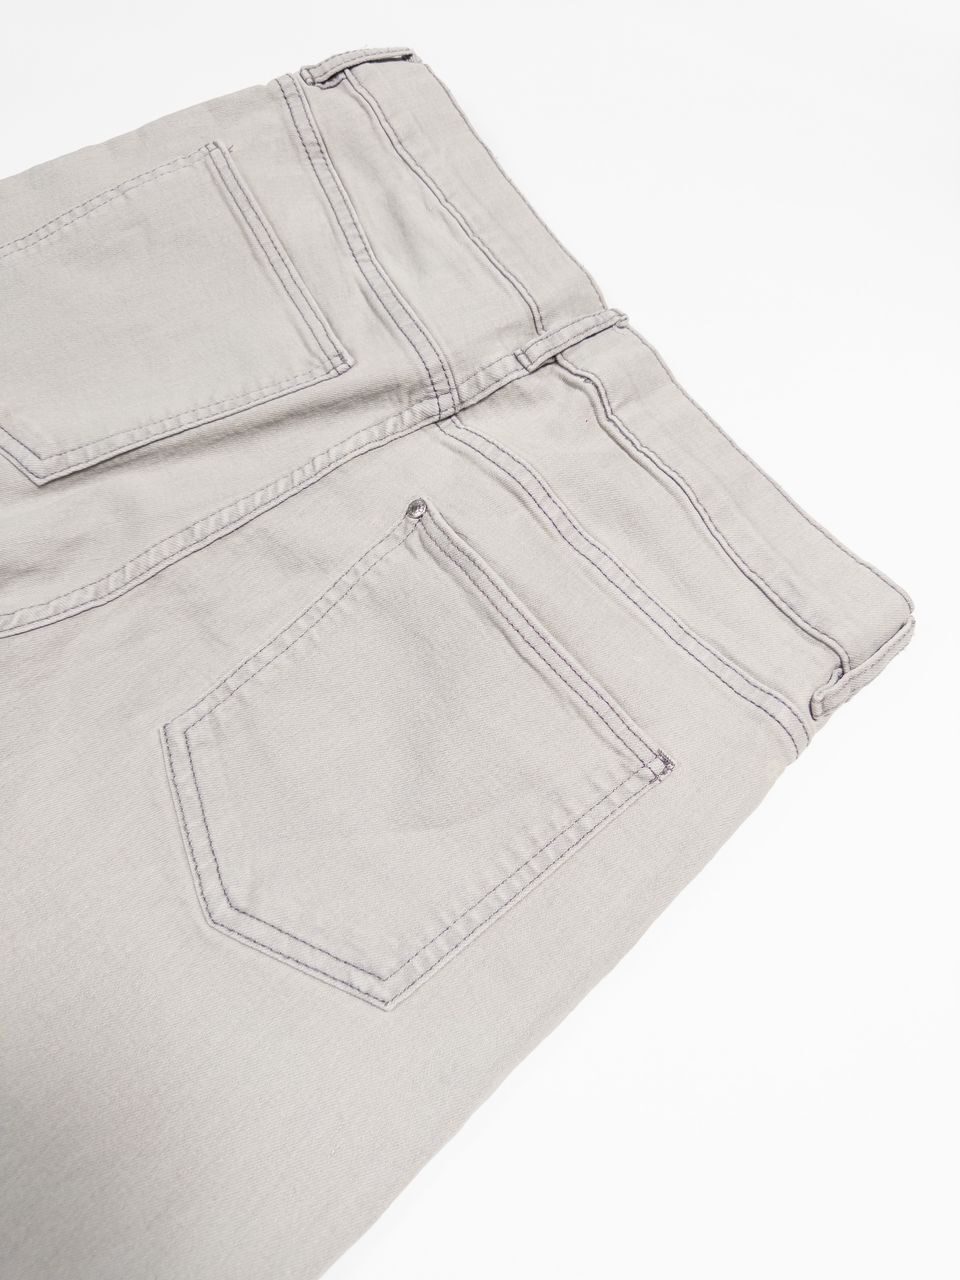 Джинсовые шорты Slim Fit на рост 164 см 13-14 лет H&M